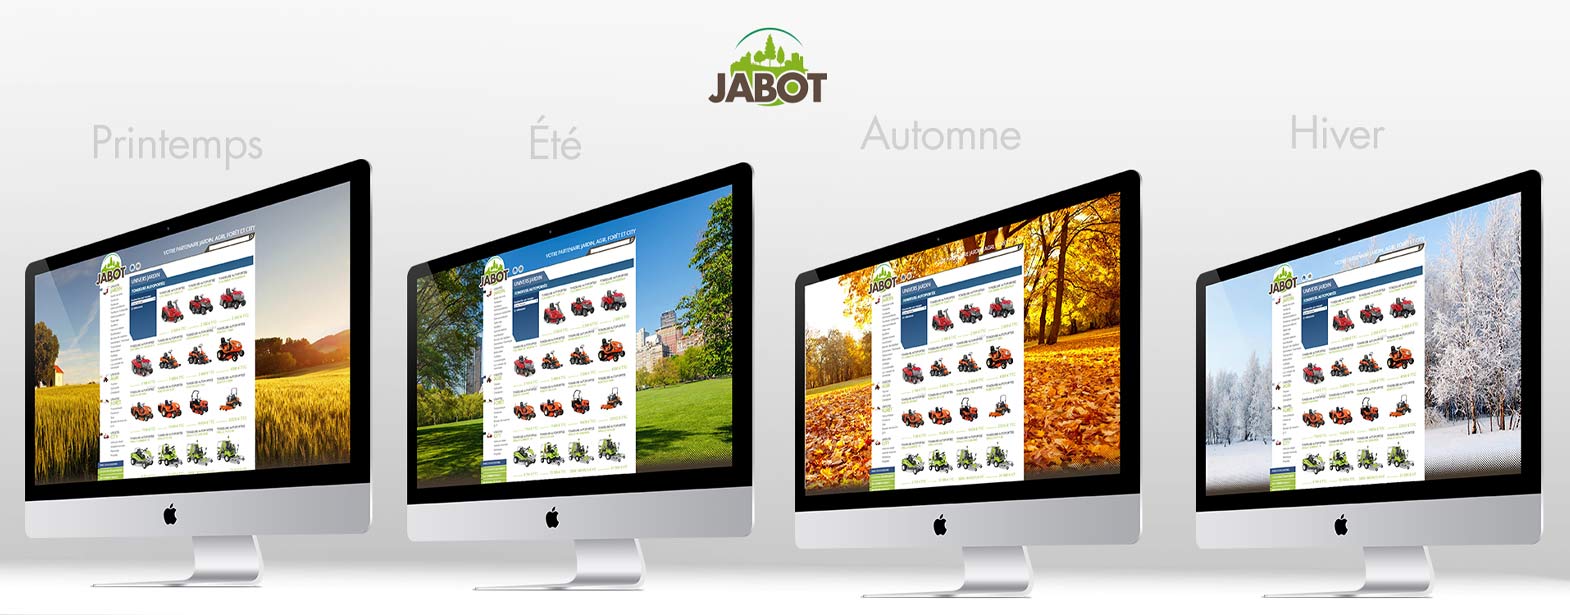 Création d’une identité visuelle pour les 50 ans de la société Jabot. Nous avons mis en place une charte graphique spécifique déclinée sur les véhicules, le bâtiment et sur le site internet.